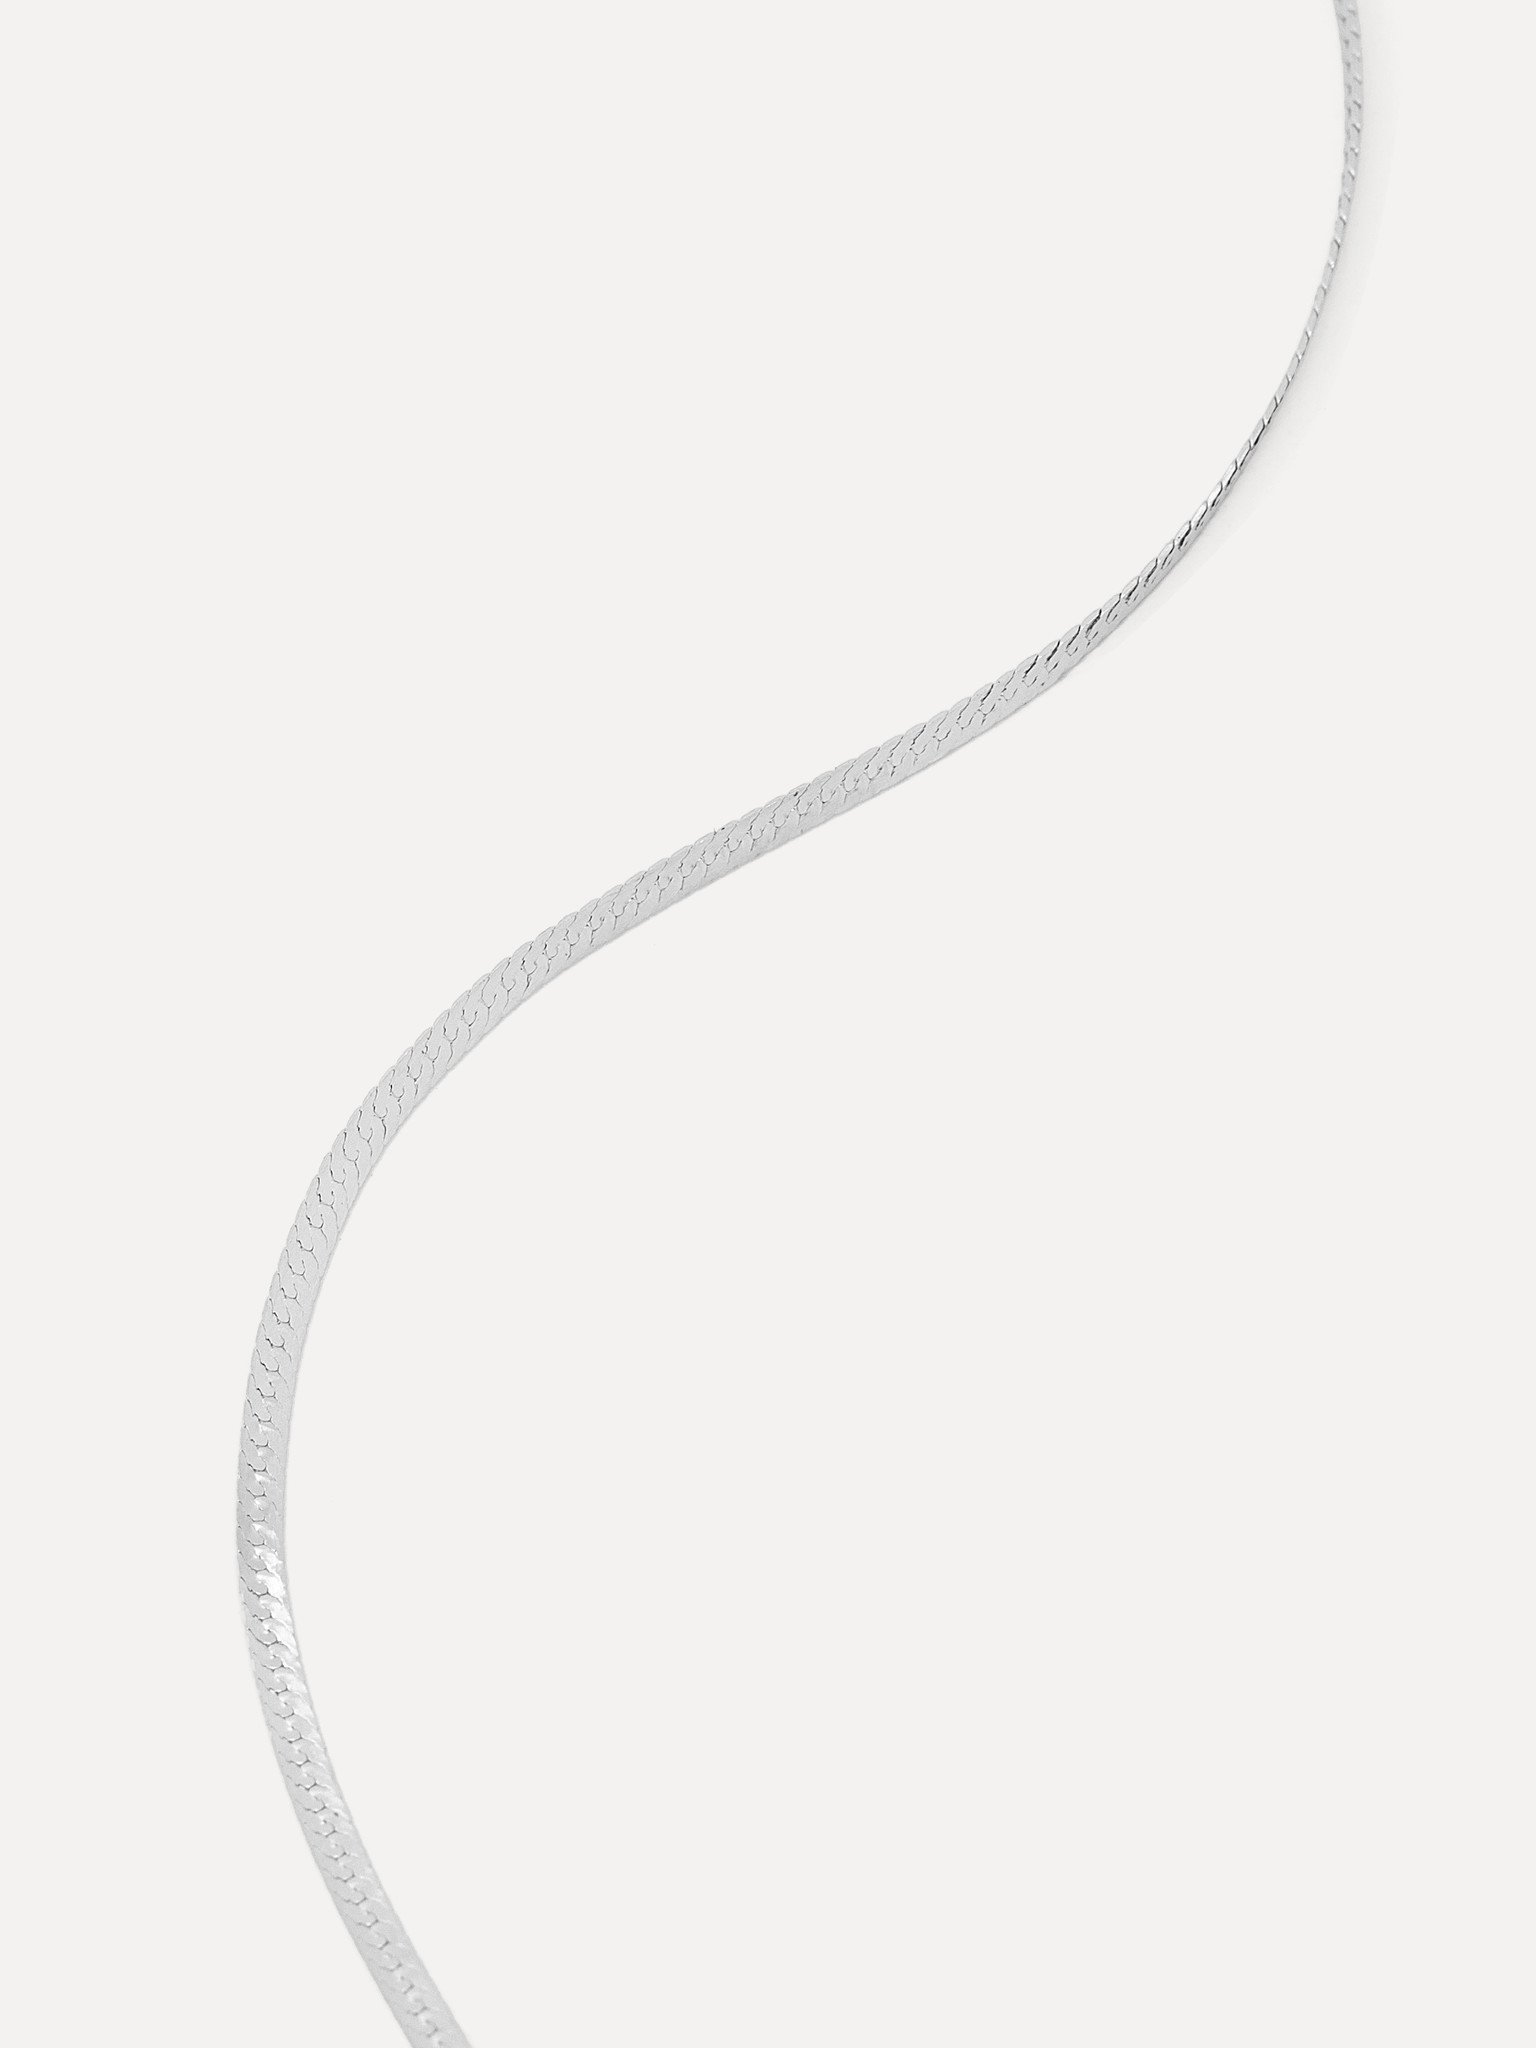 Necklace Roma Snake 37cm